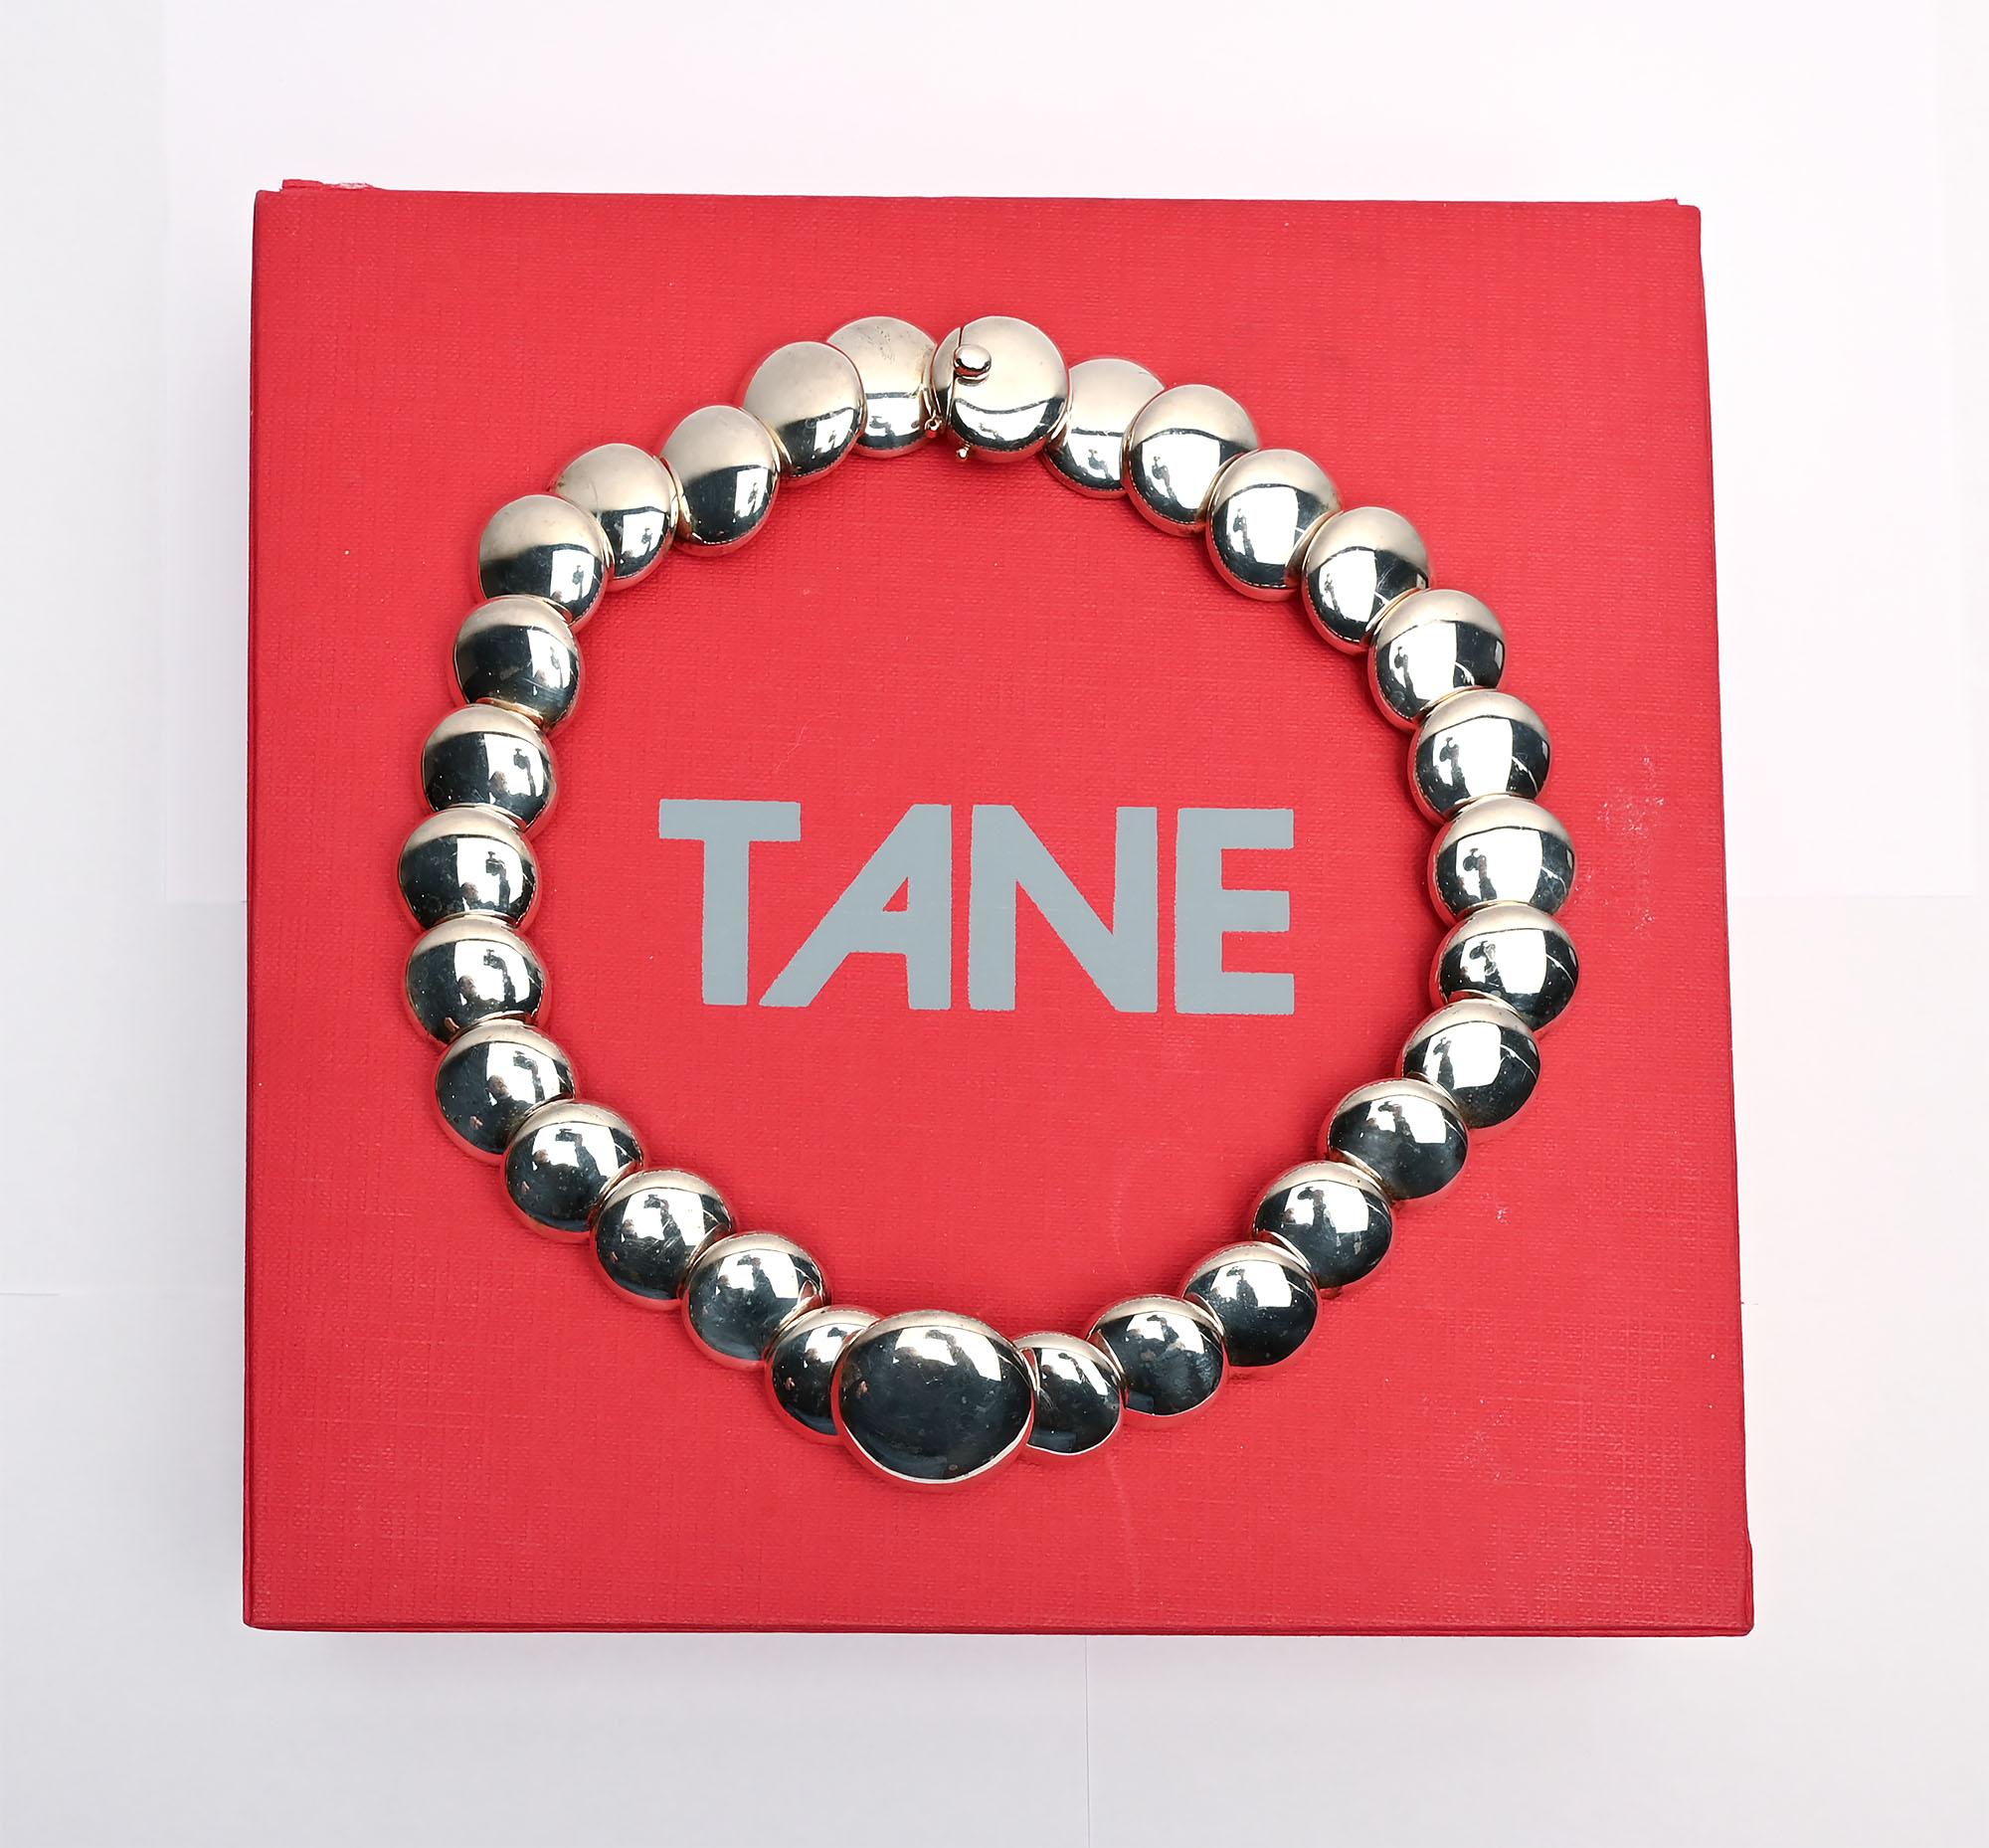 Atemberaubende Halskette aus Sterlingsilber von Tane, dem renommiertesten Juwelier Mexikos. Die Halskette besteht aus sich überlappenden Kreisen mit einem Durchmesser von 3/4 Zoll. Der mittlere Kreis ist 1 1/8 Zoll groß. Die Halskette hat ein